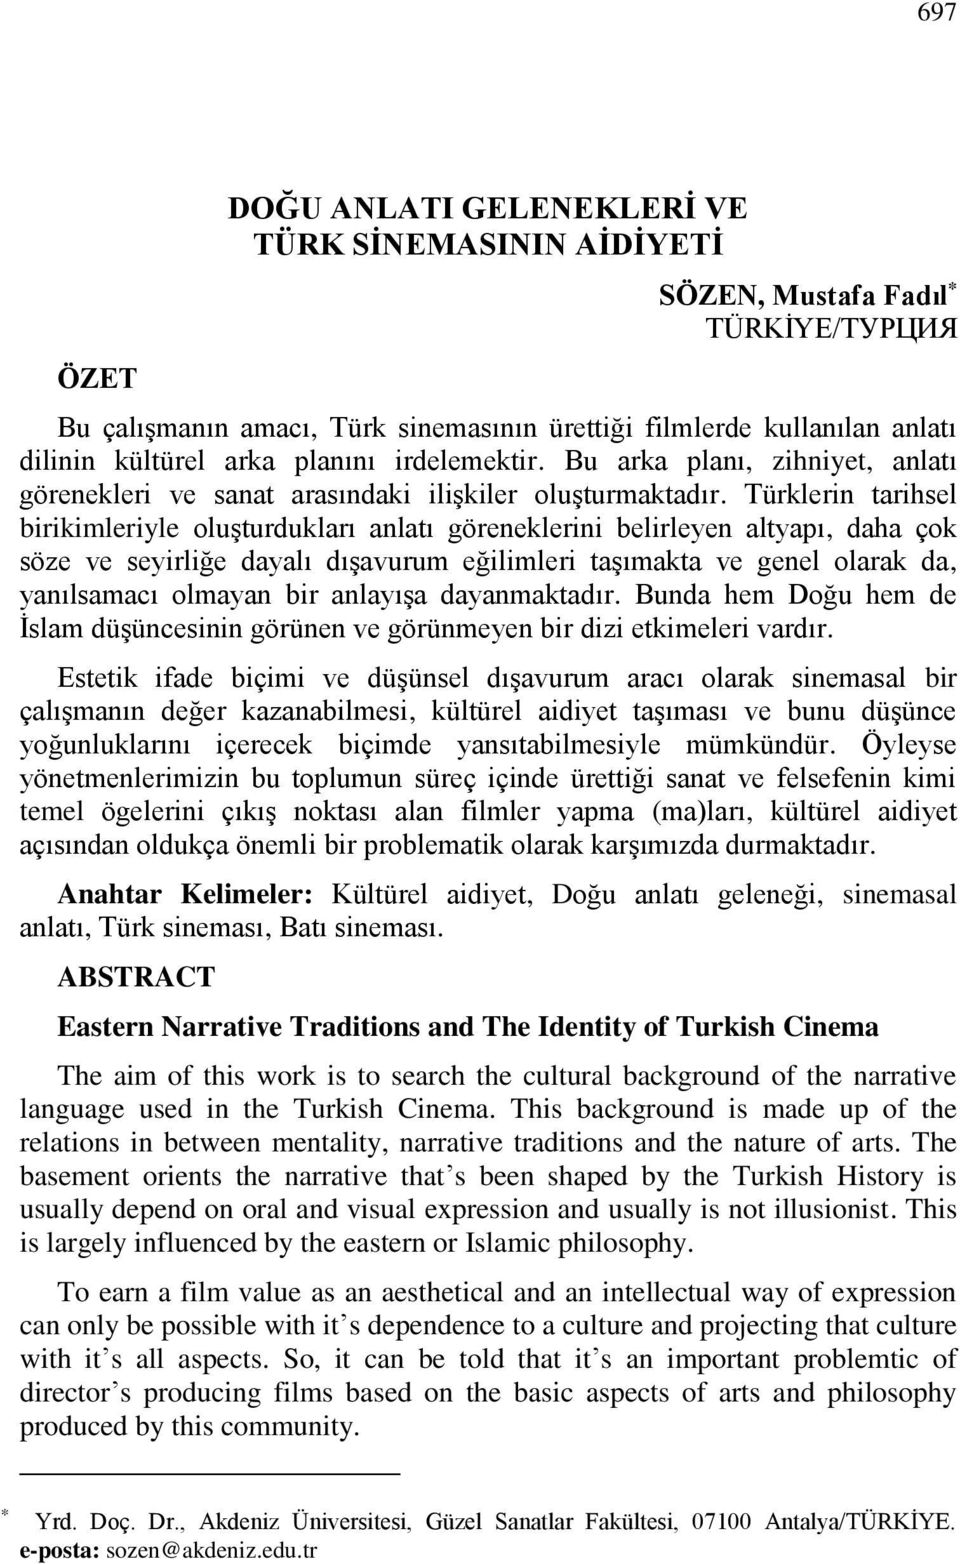 Türklerin tarihsel birikimleriyle oluşturdukları anlatı göreneklerini belirleyen altyapı, daha çok söze ve seyirliğe dayalı dışavurum eğilimleri taşımakta ve genel olarak da, yanılsamacı olmayan bir